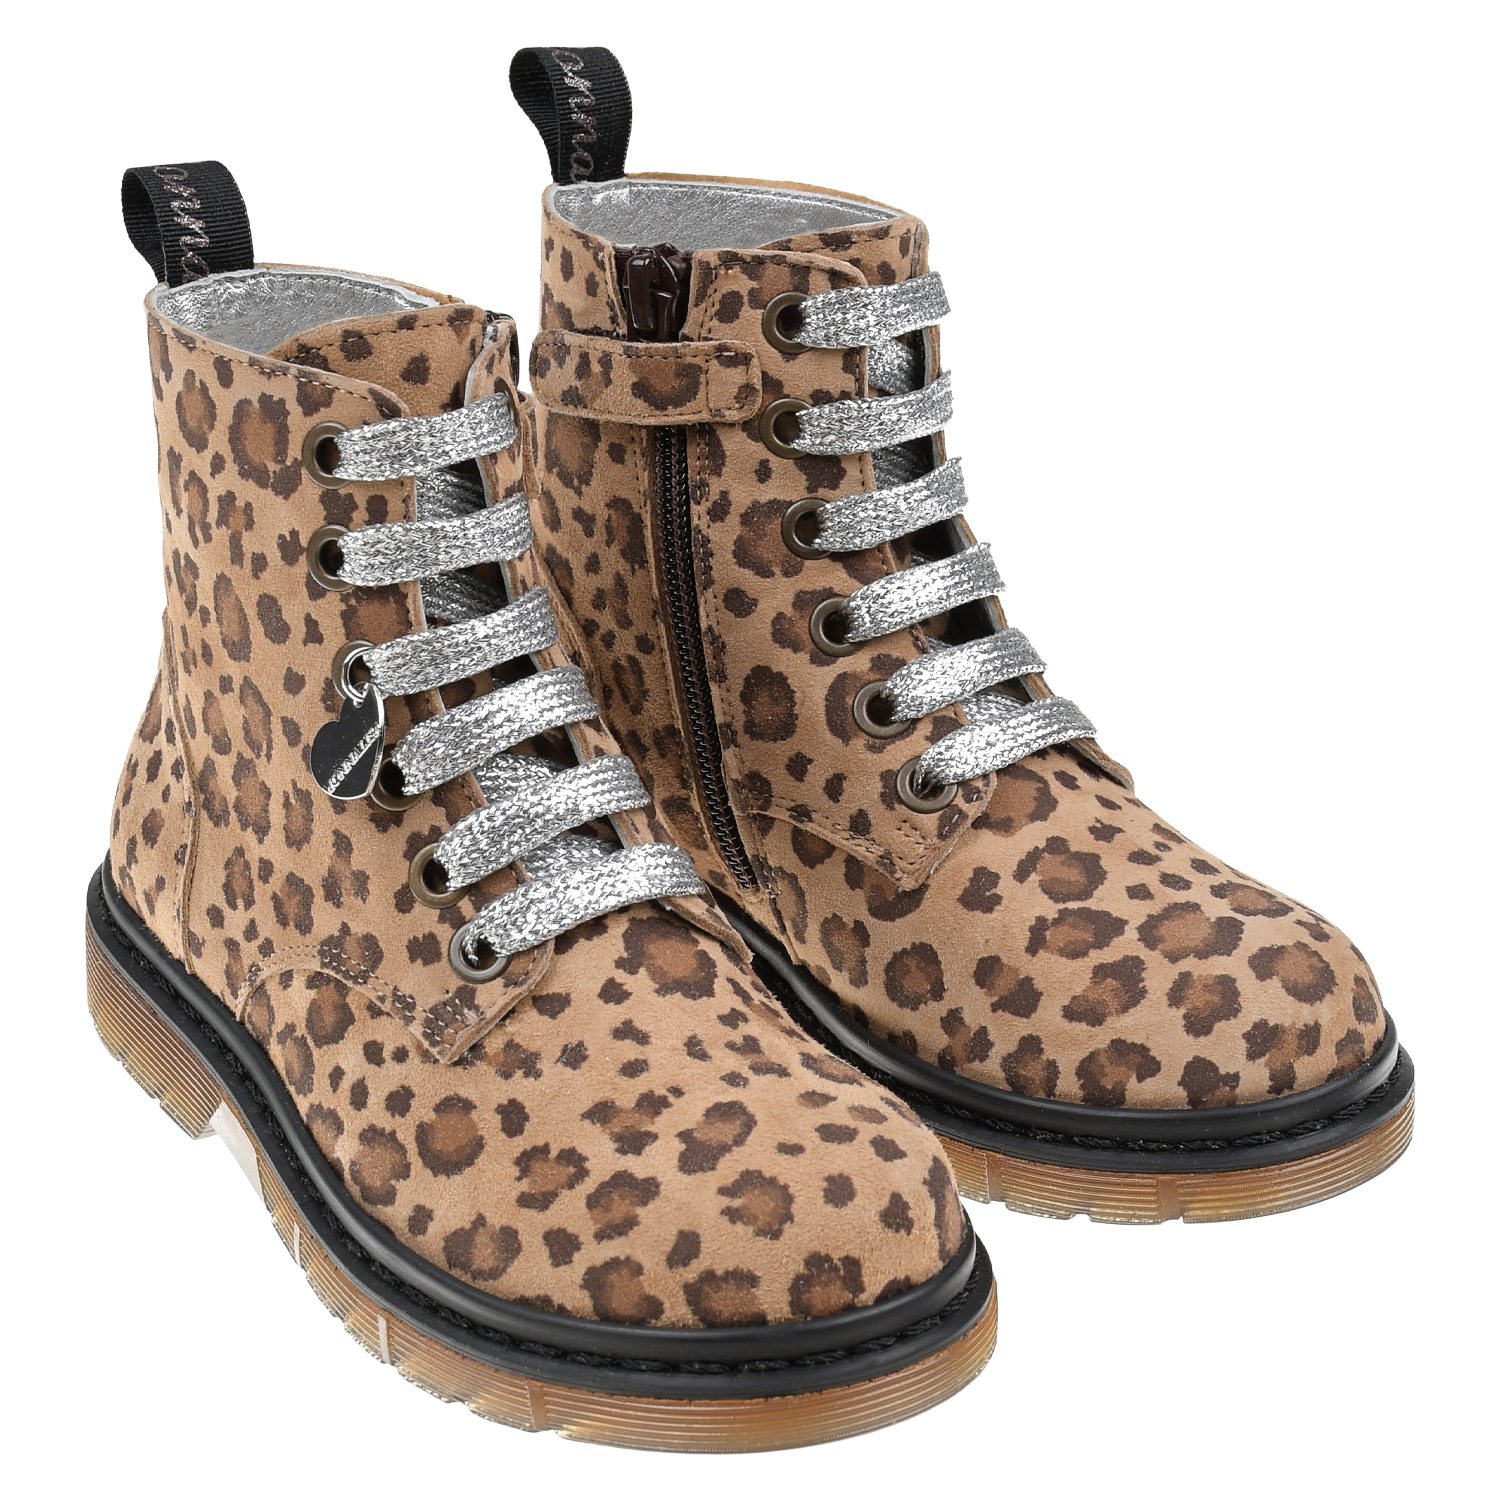 Кожаные ботинки с леопардовым принтом Monnalisa детские, размер 27, цвет бежевый